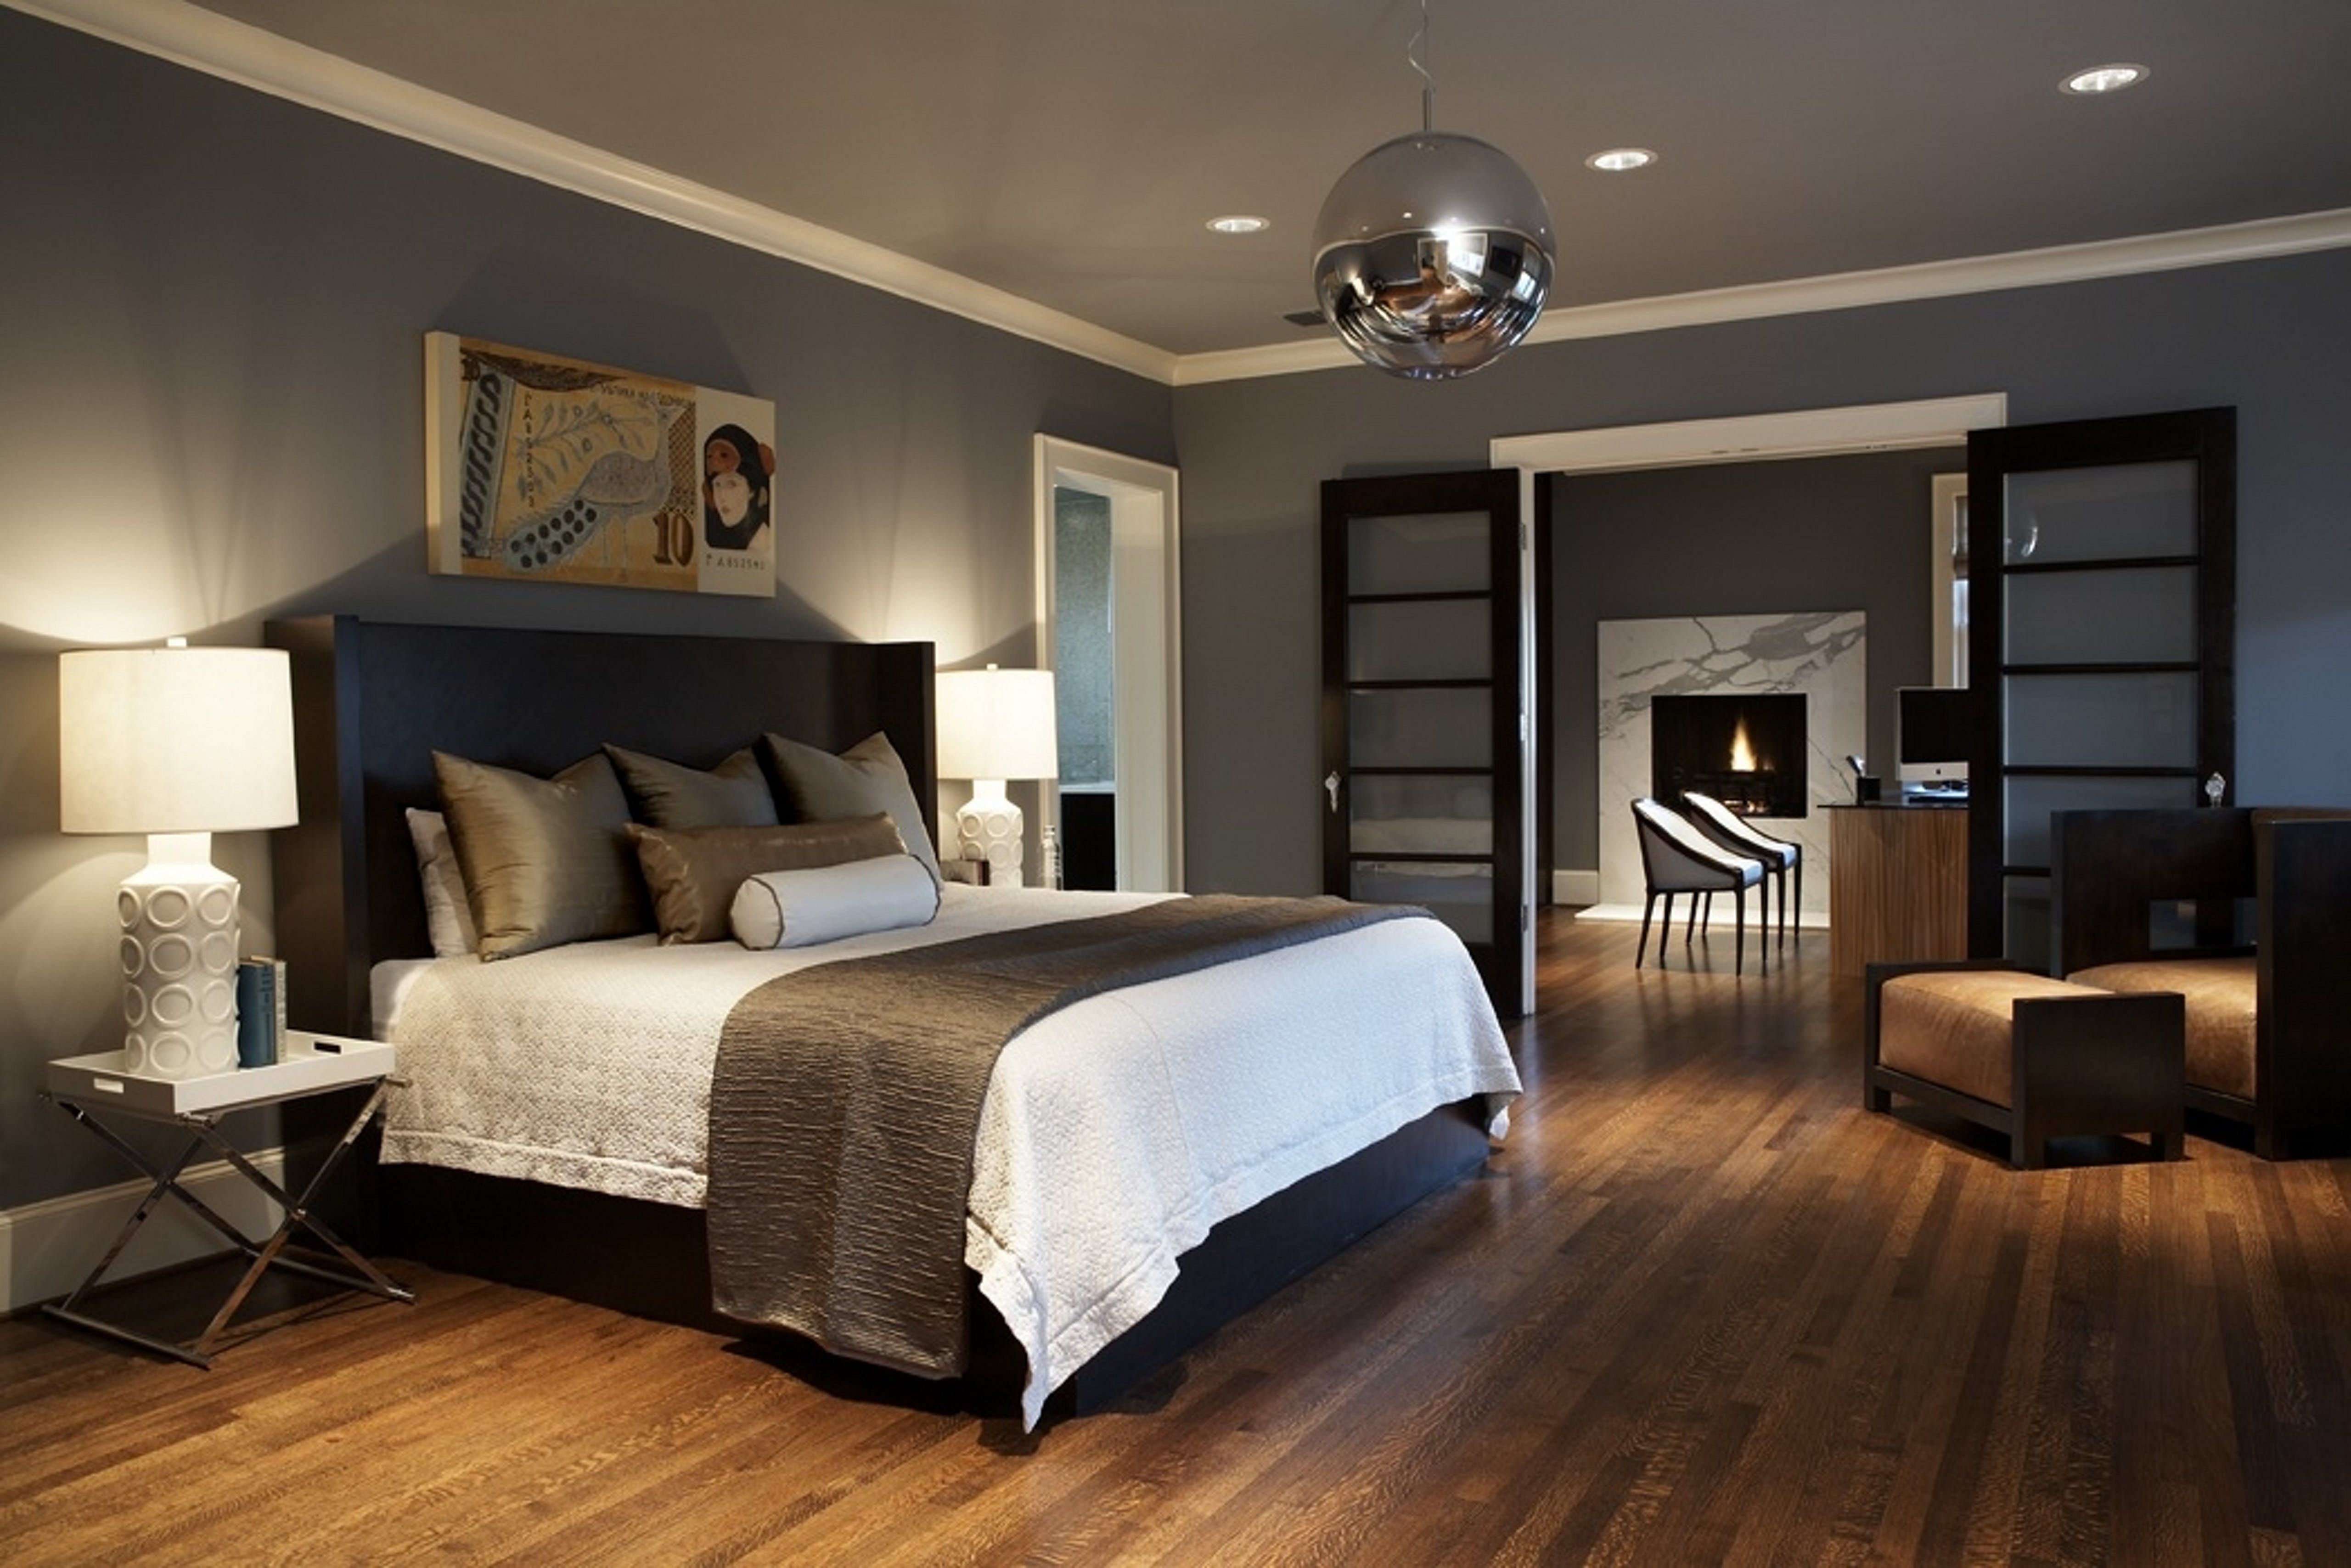 Bedroom Wallpaper With Dark Design - Dark Brown Themed Bedroom - HD Wallpaper 